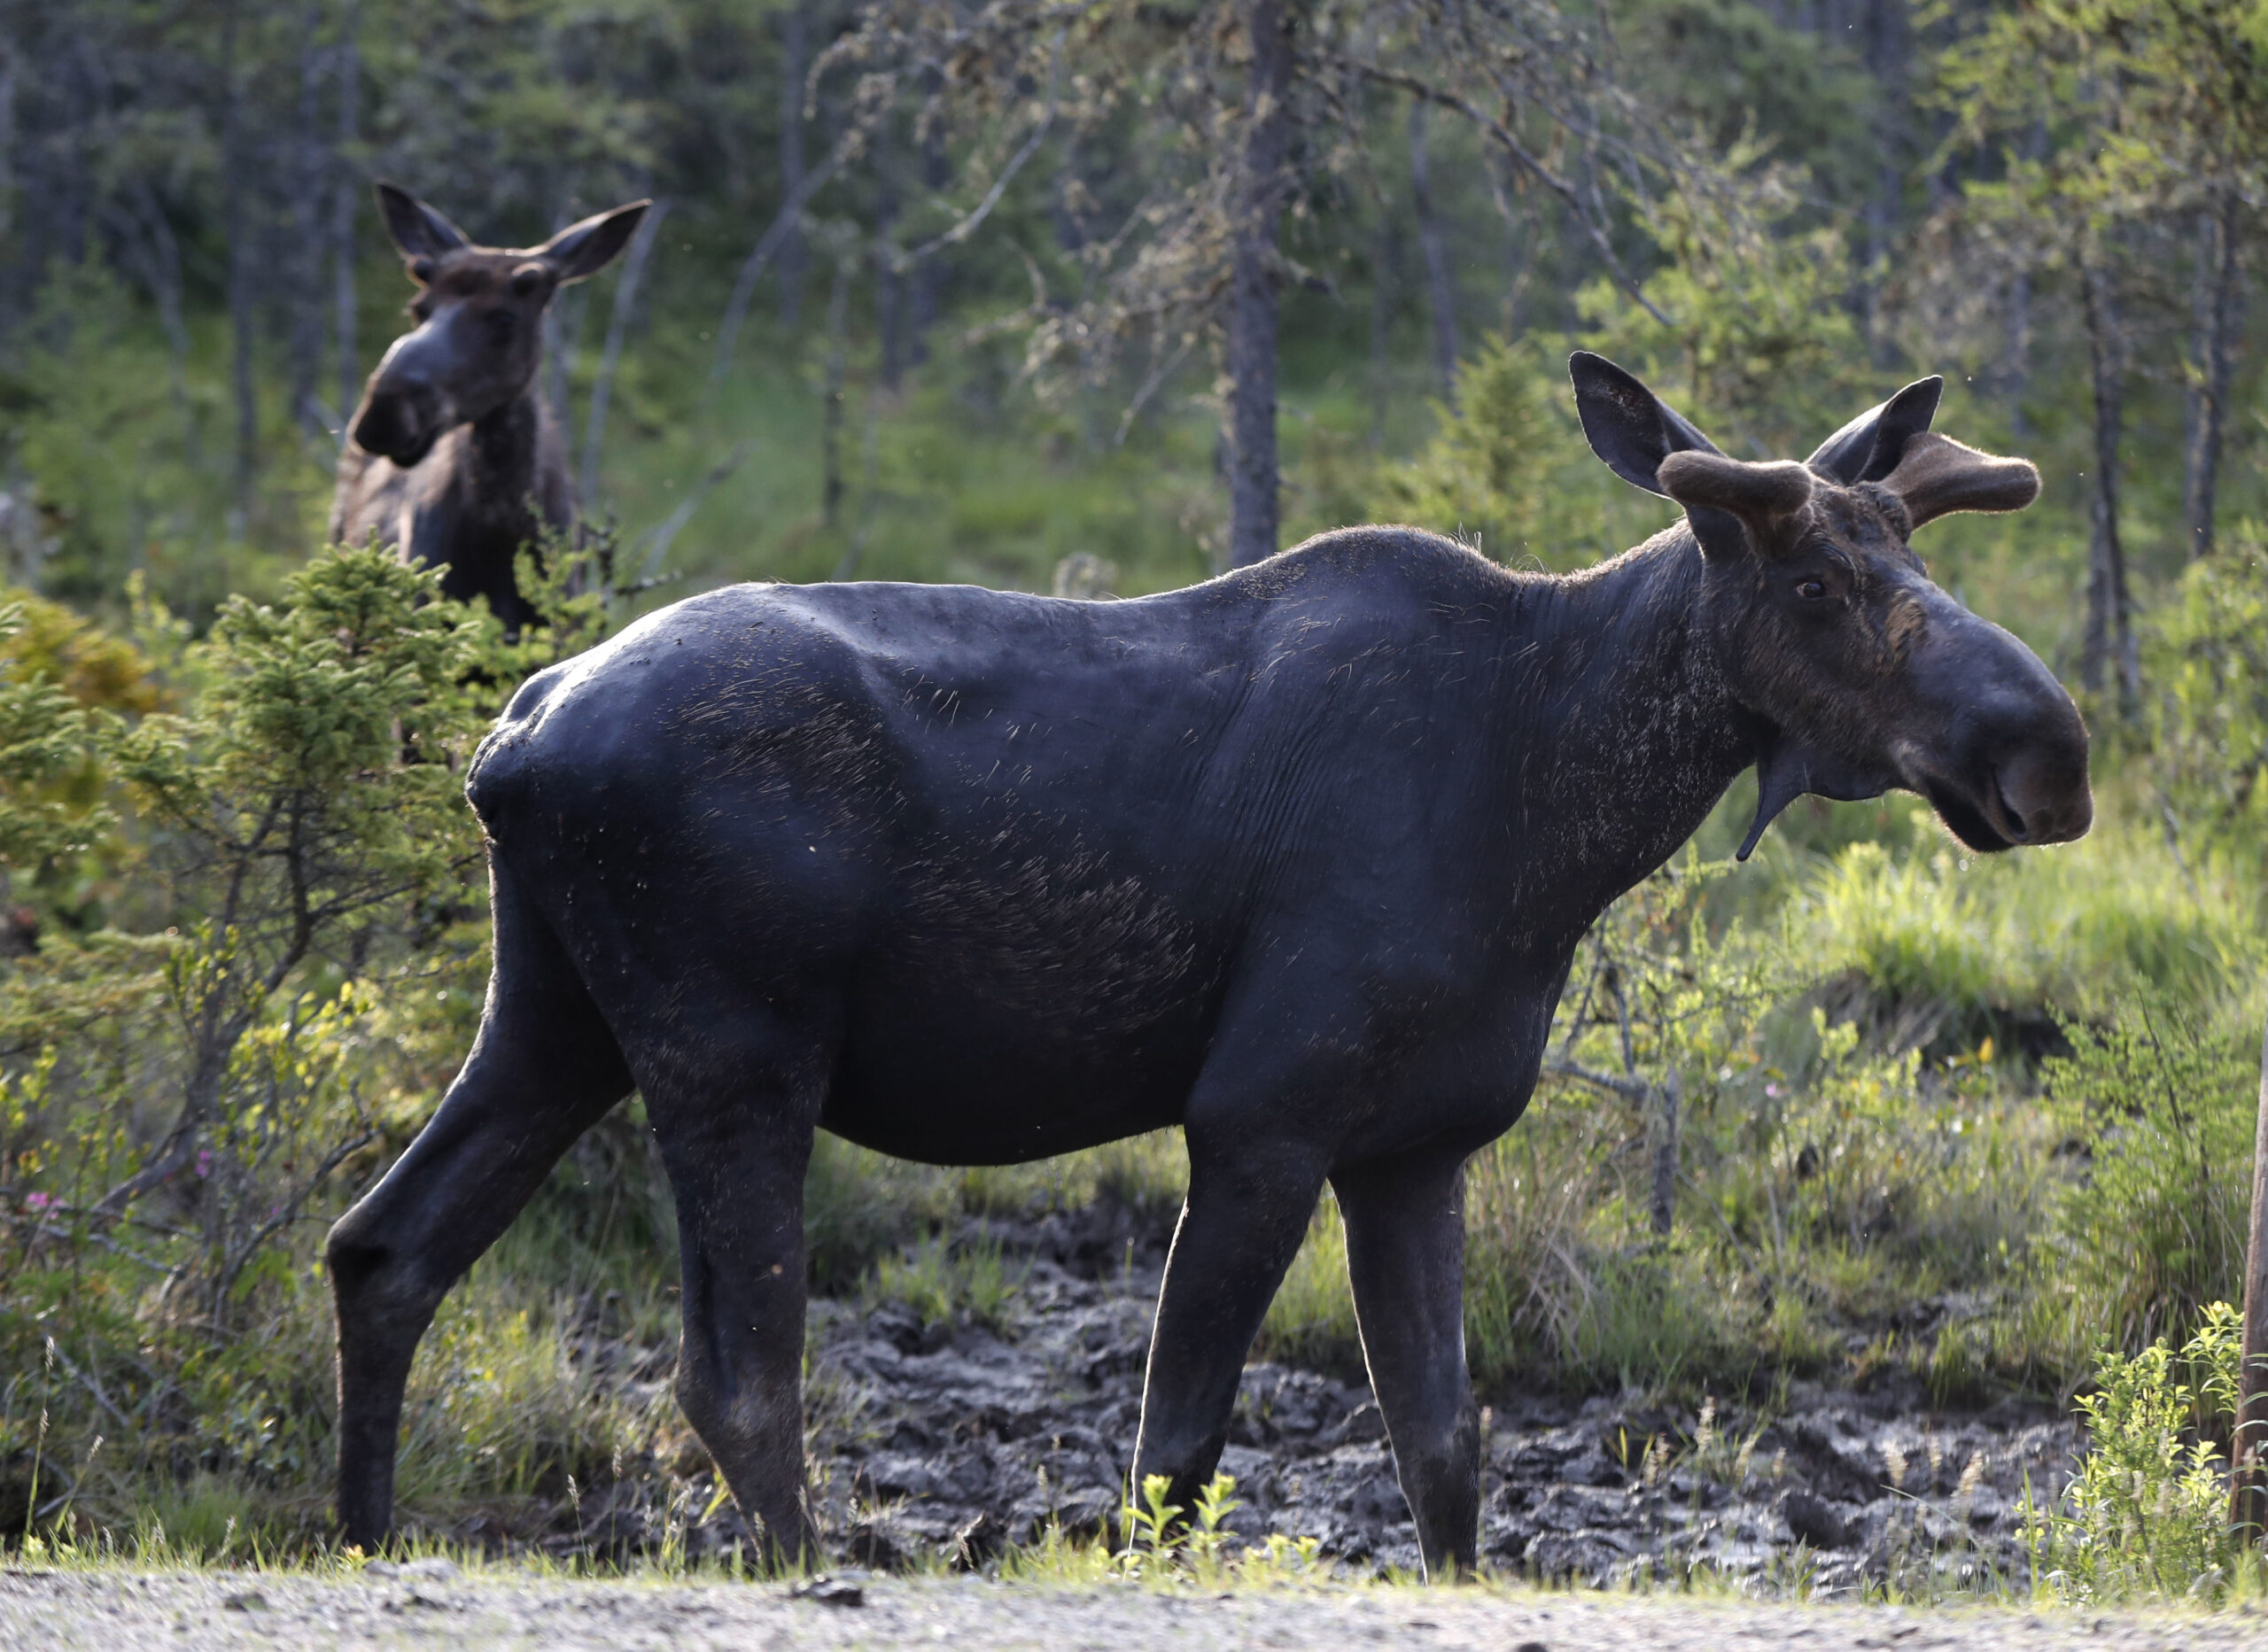 Two moose in a field